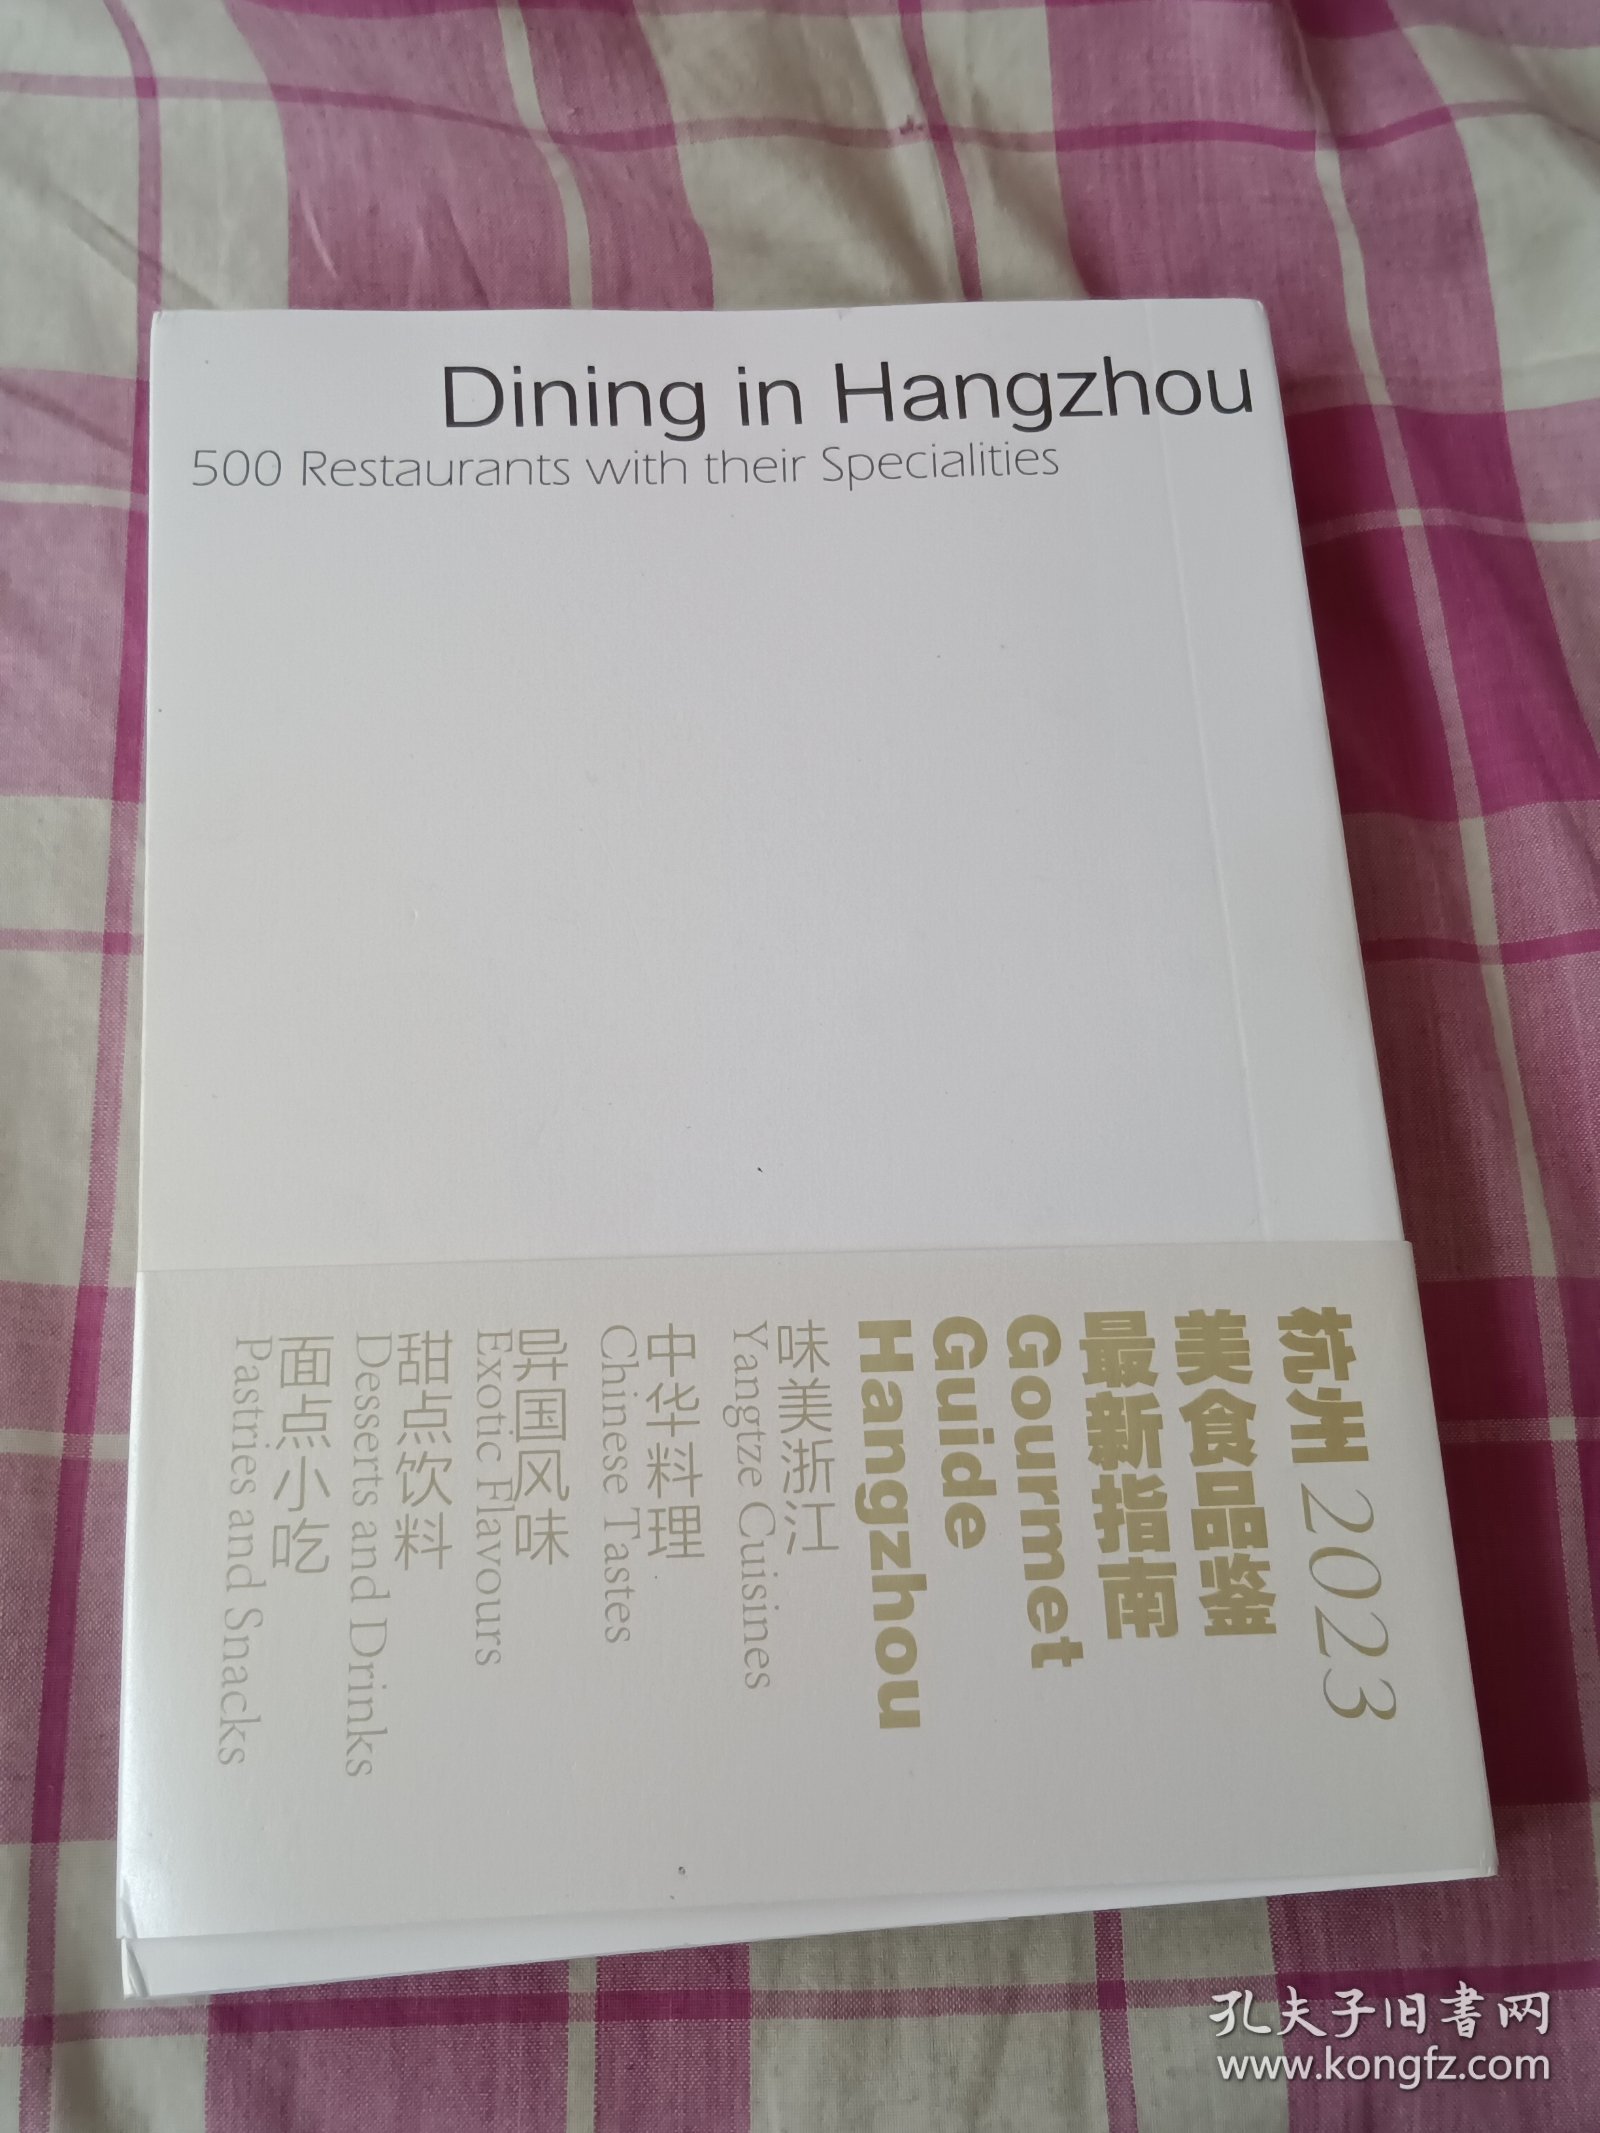 食在杭州:美食特色餐厅500家